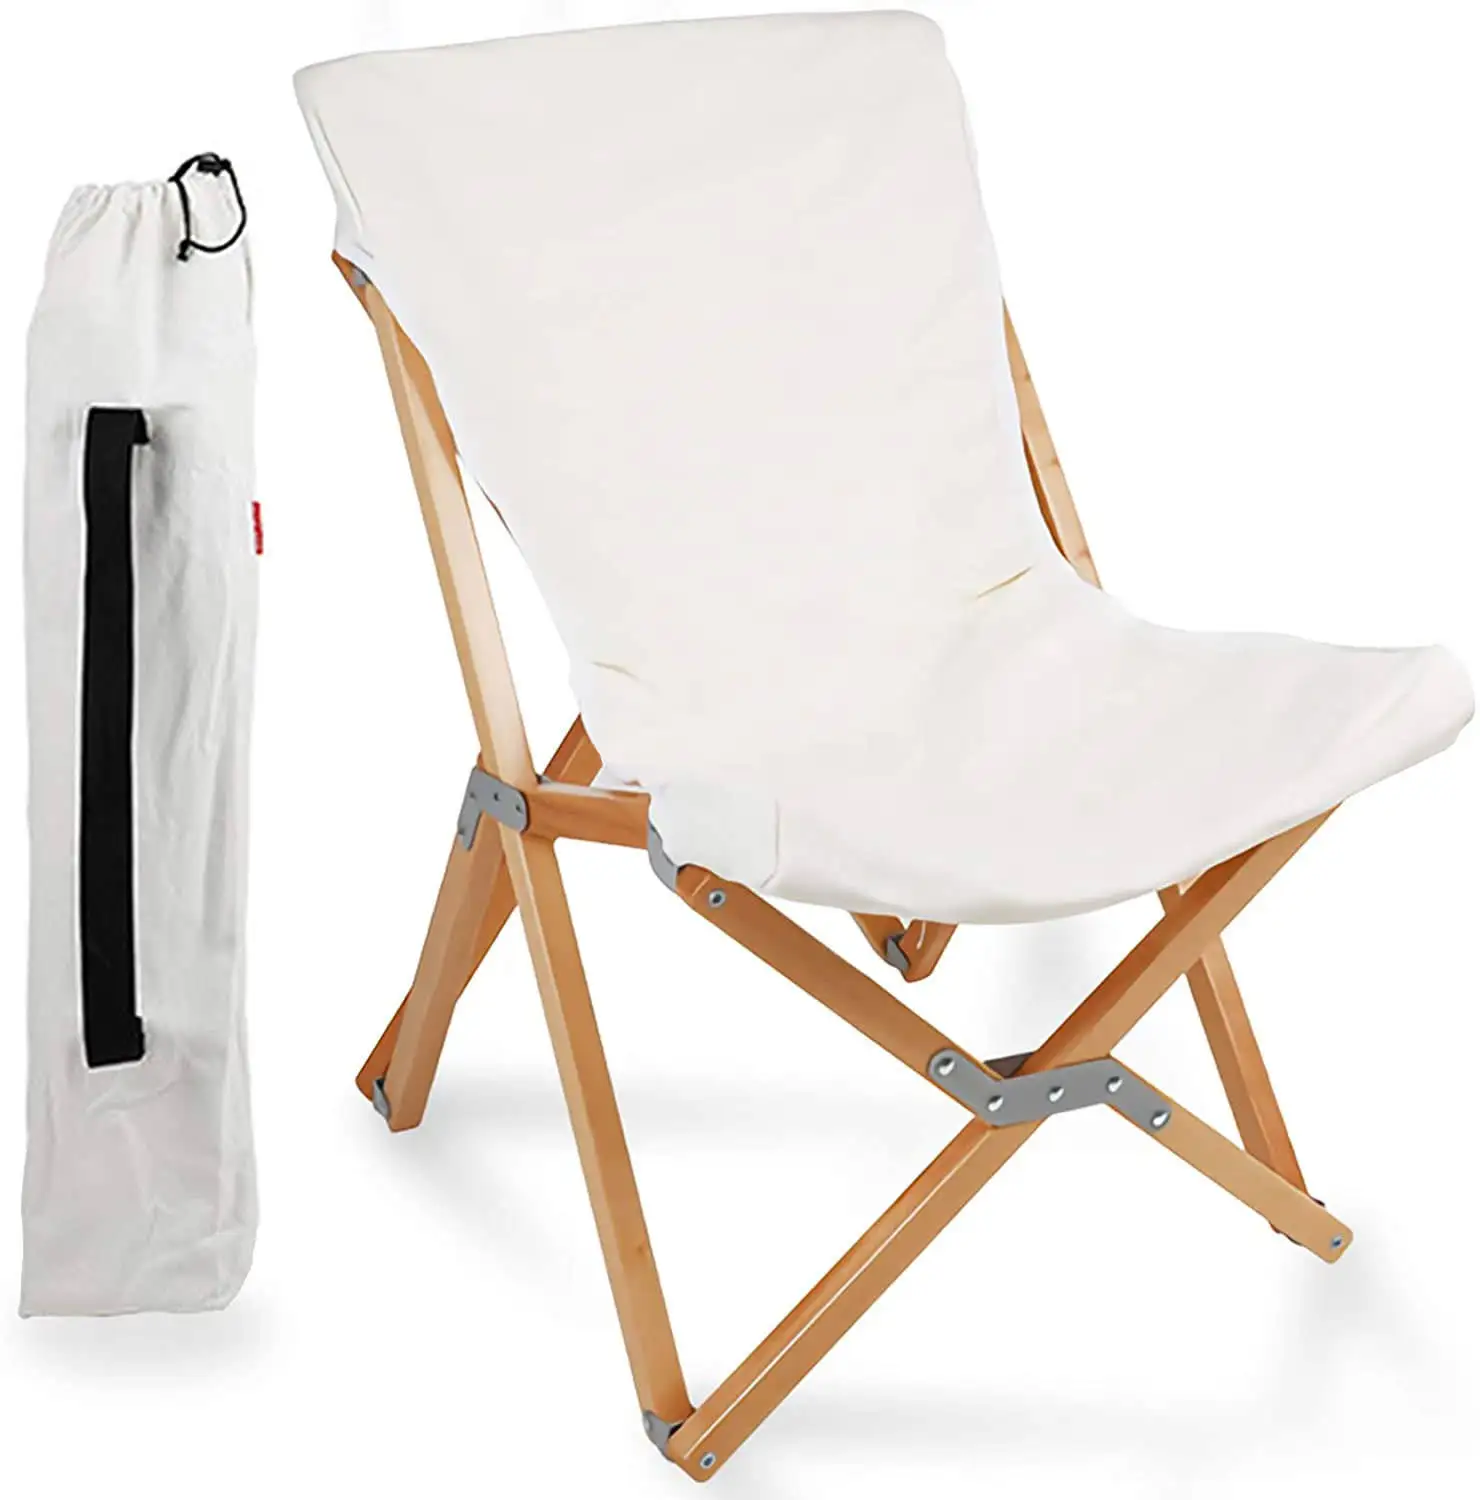 الجملة مخصص الحديثة في الهواء الطلق حديقة المعيشة غرفة قابل للتعديل المحمولة الترفيه كرسي قابل للطيّ